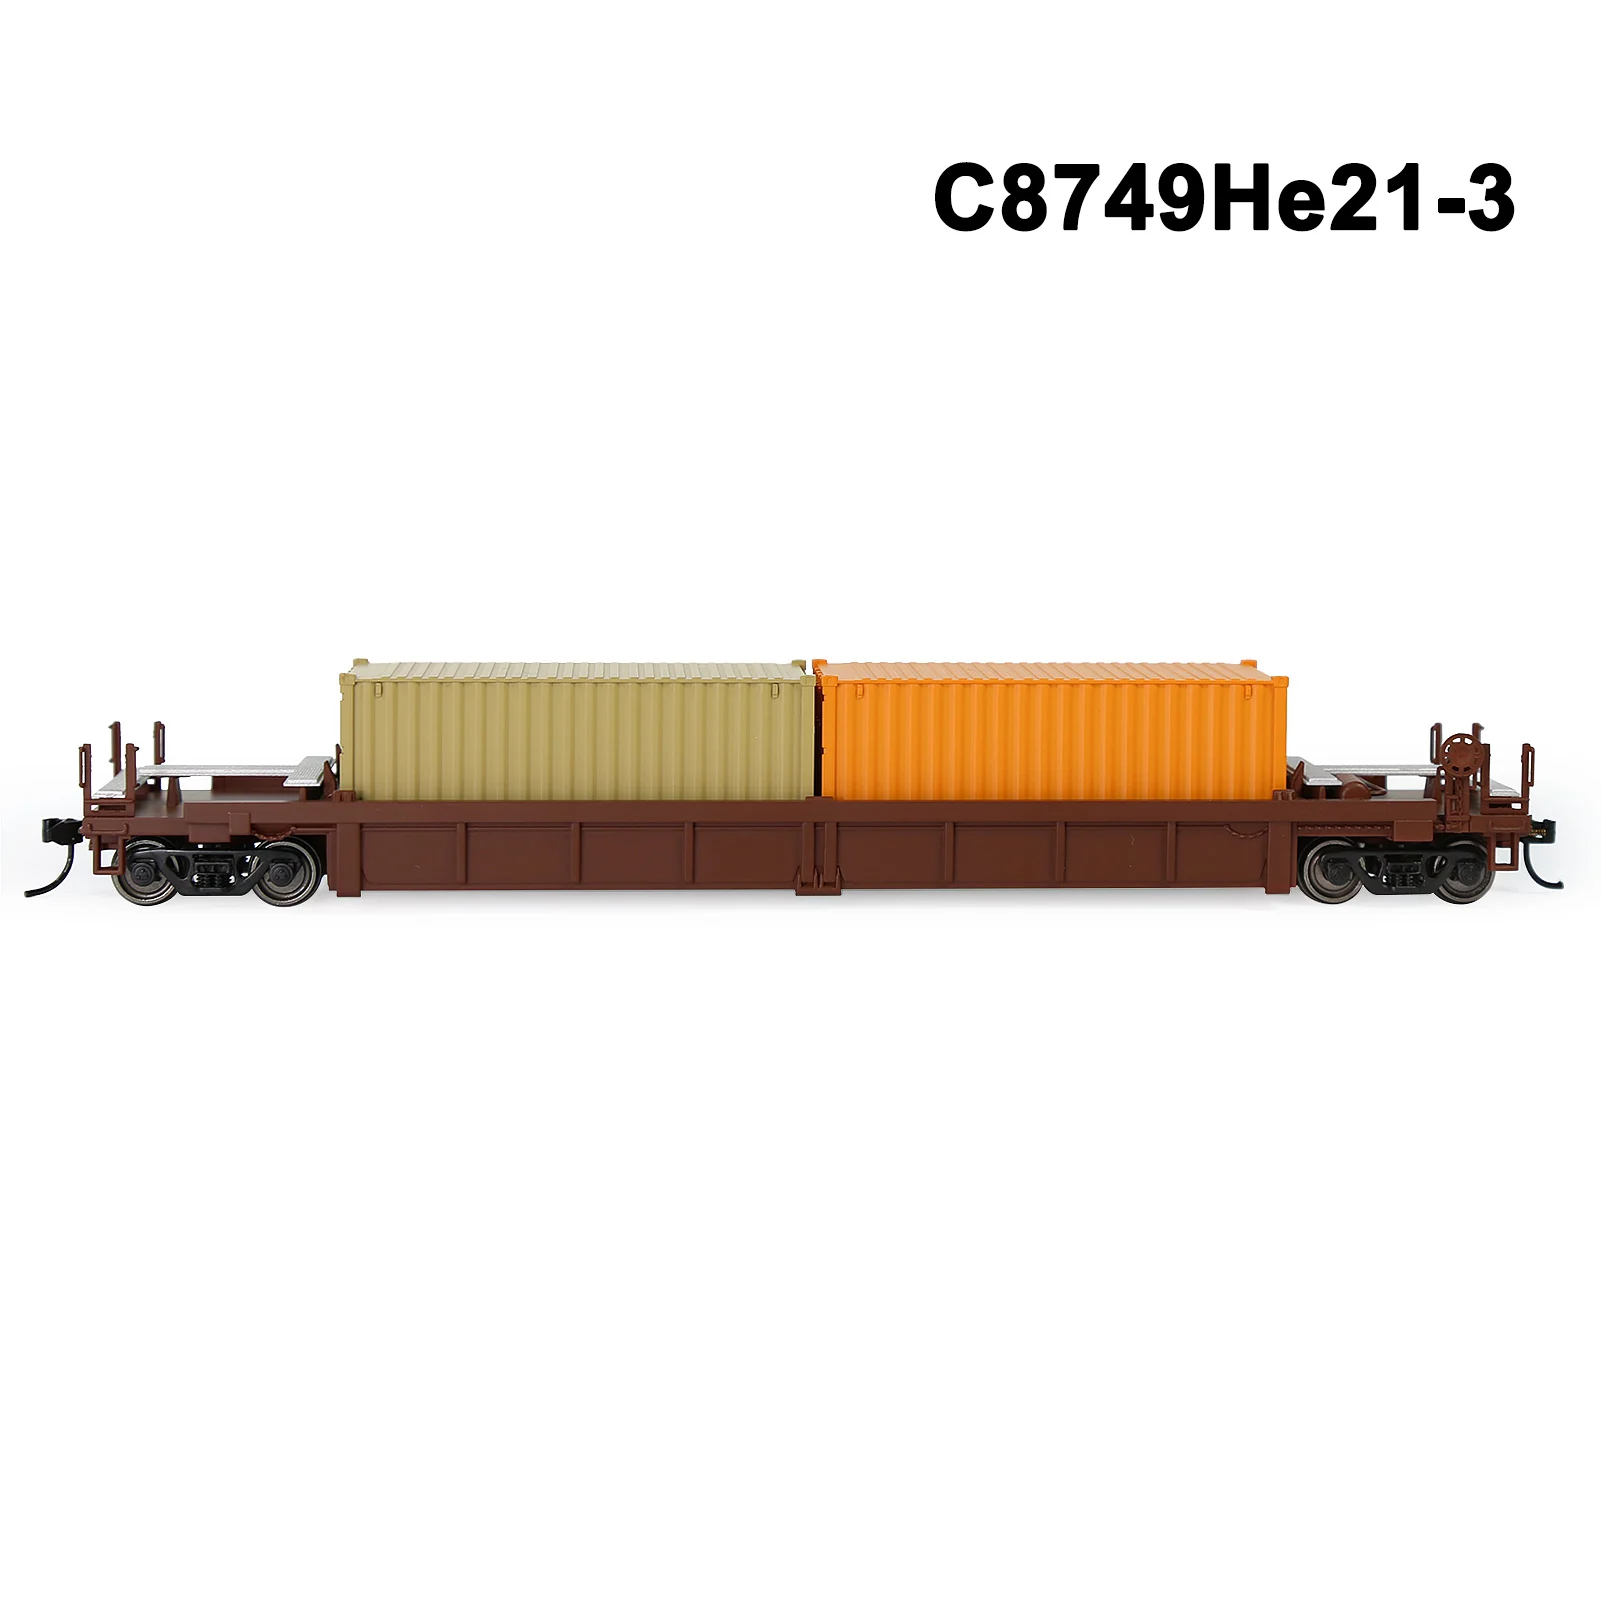 C8749He21-3